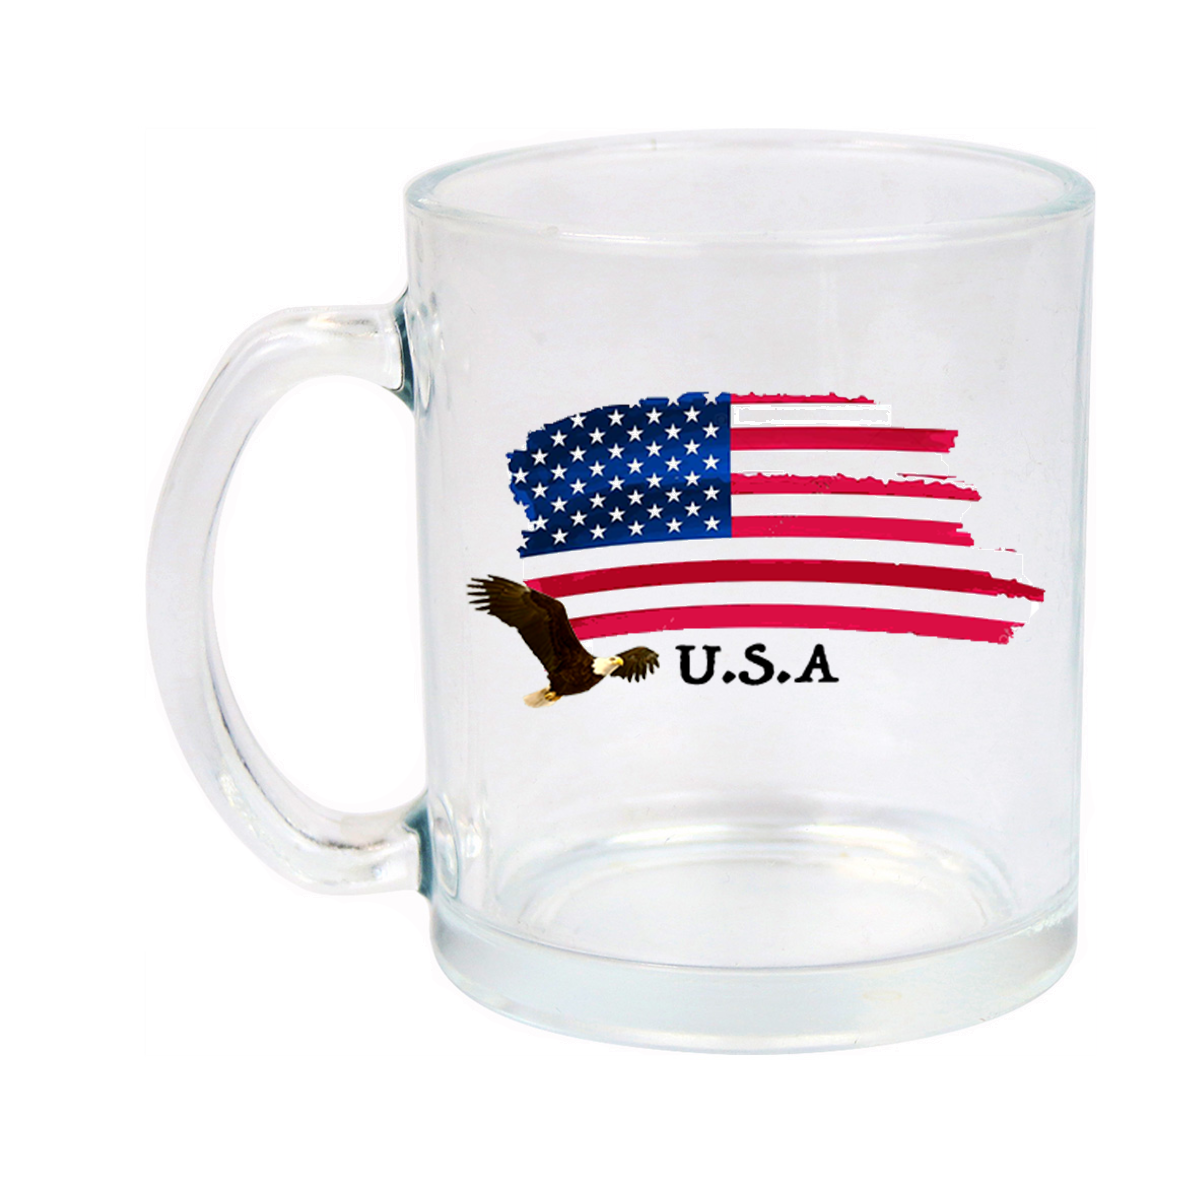 I Love USA Glass Mug 11oz